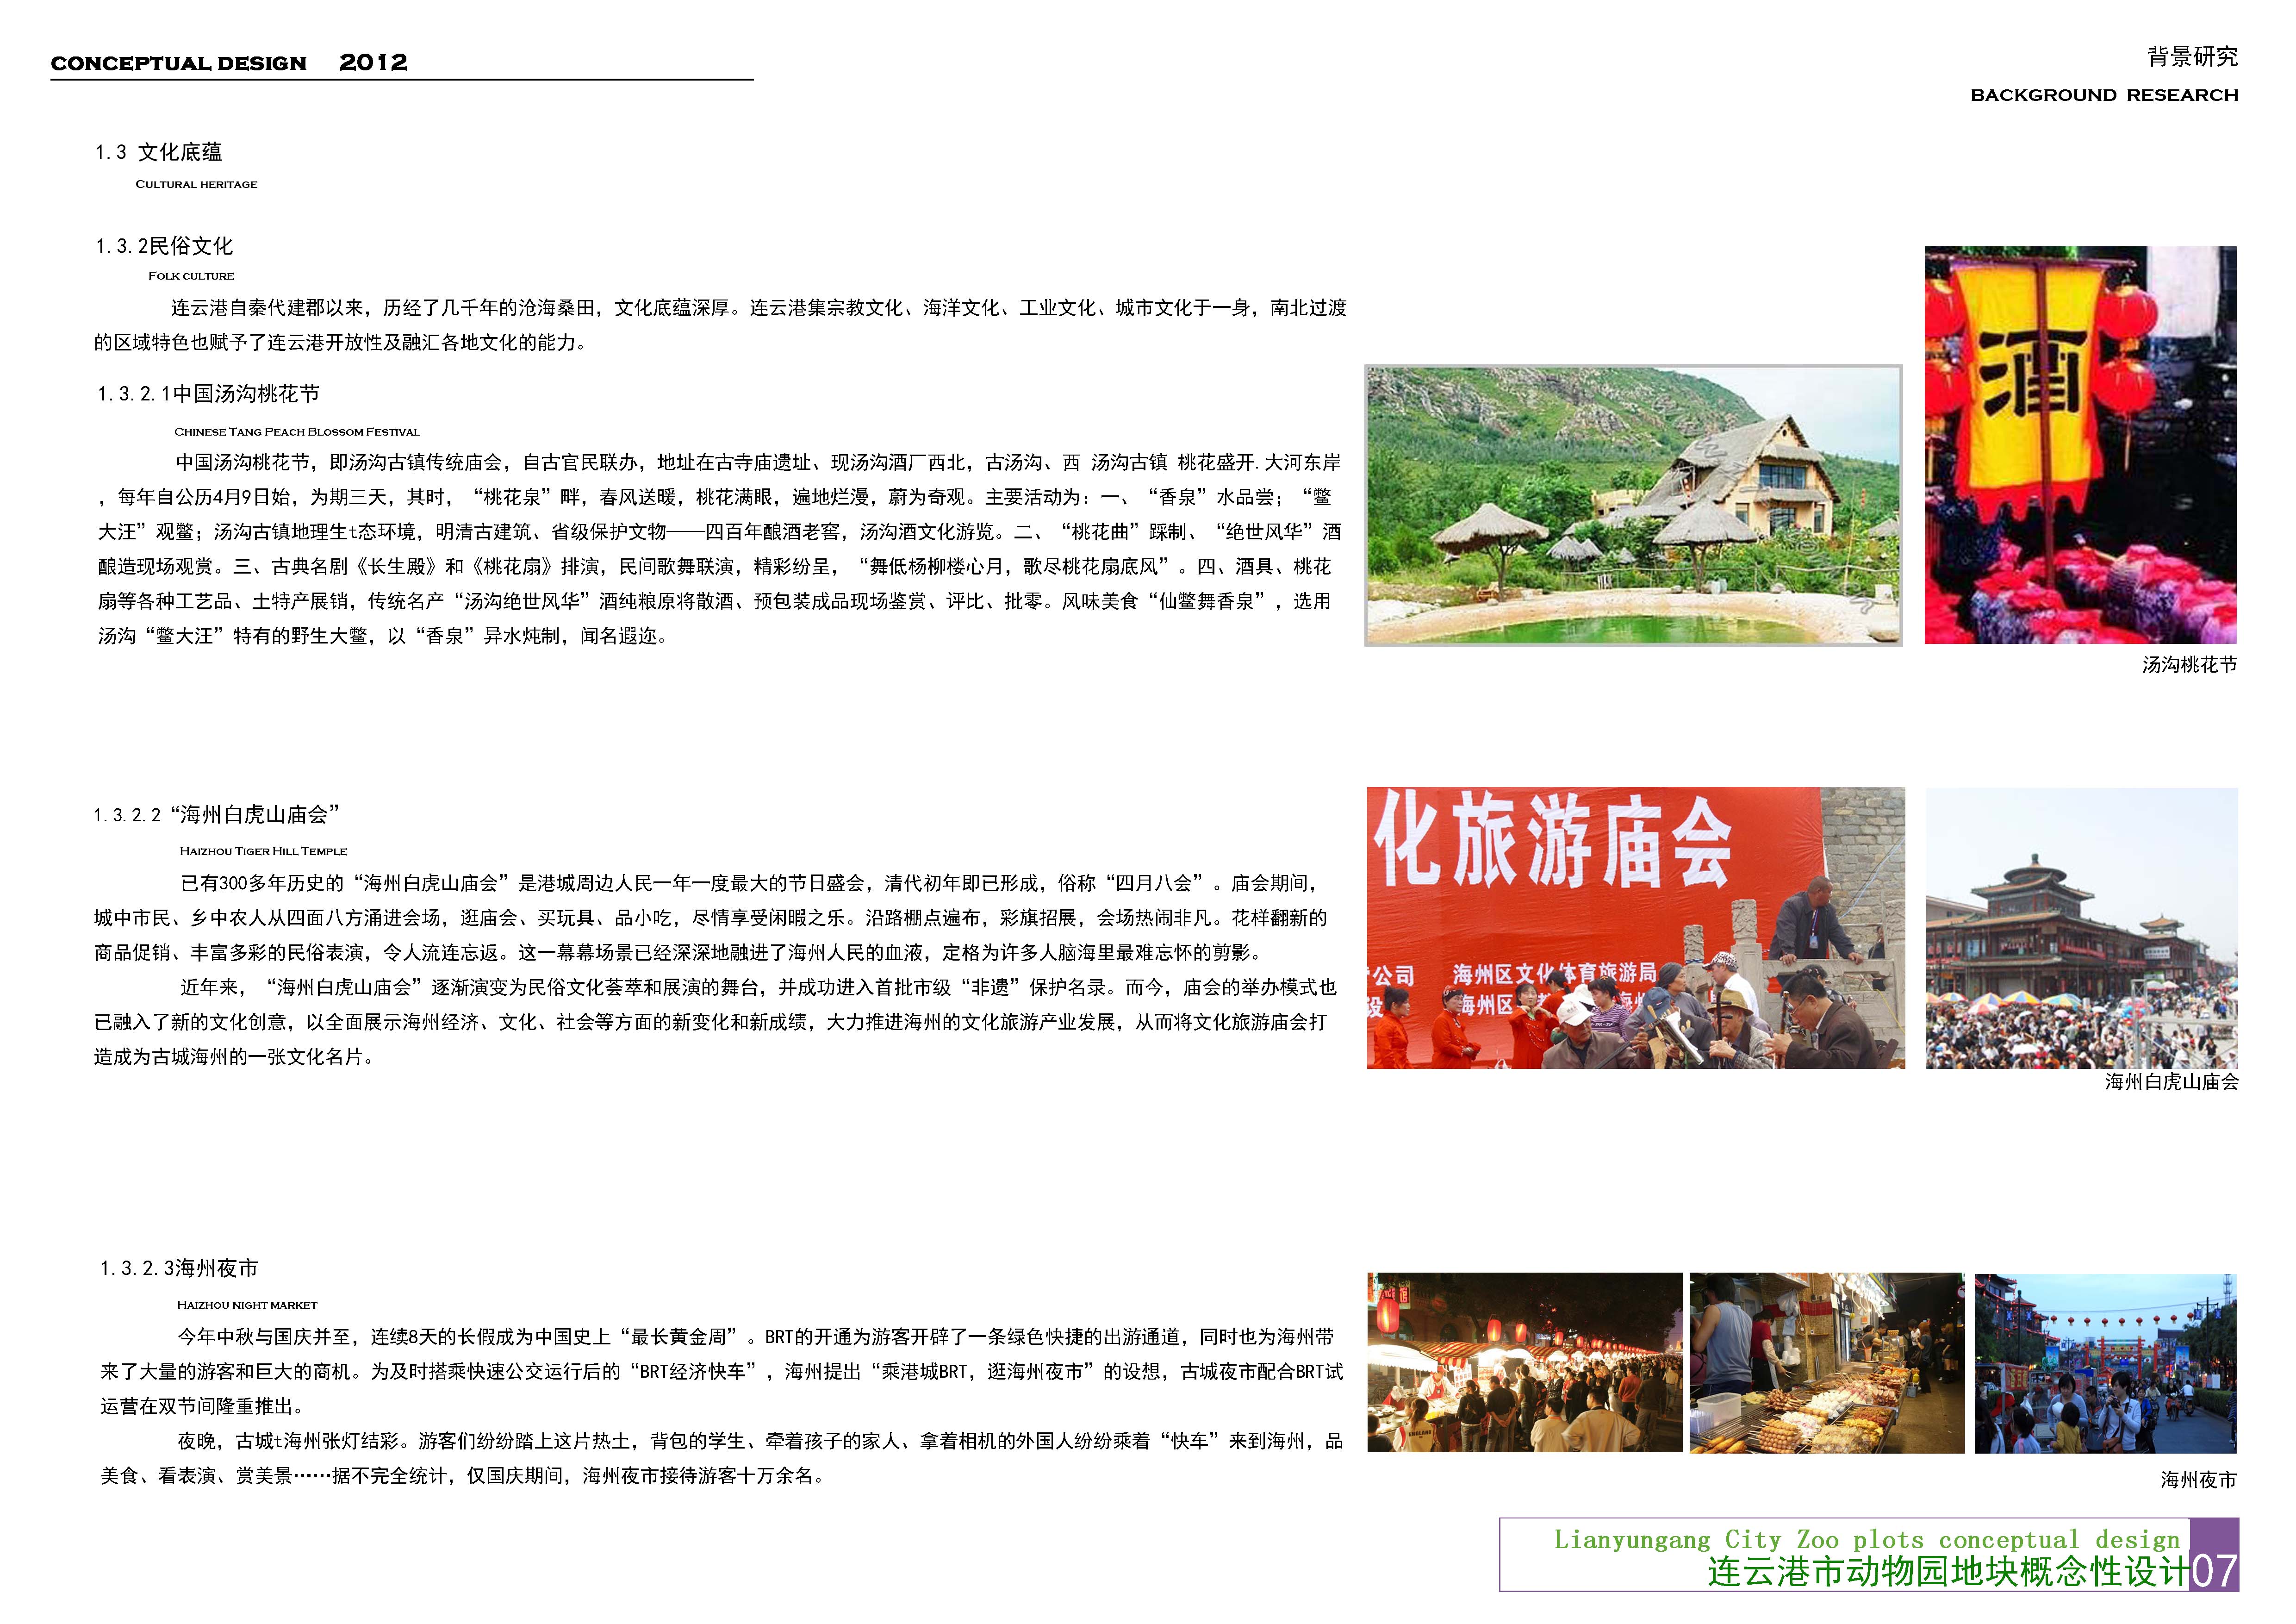 [江苏]古城山水神韵动物园景观规划设计方案文本2012